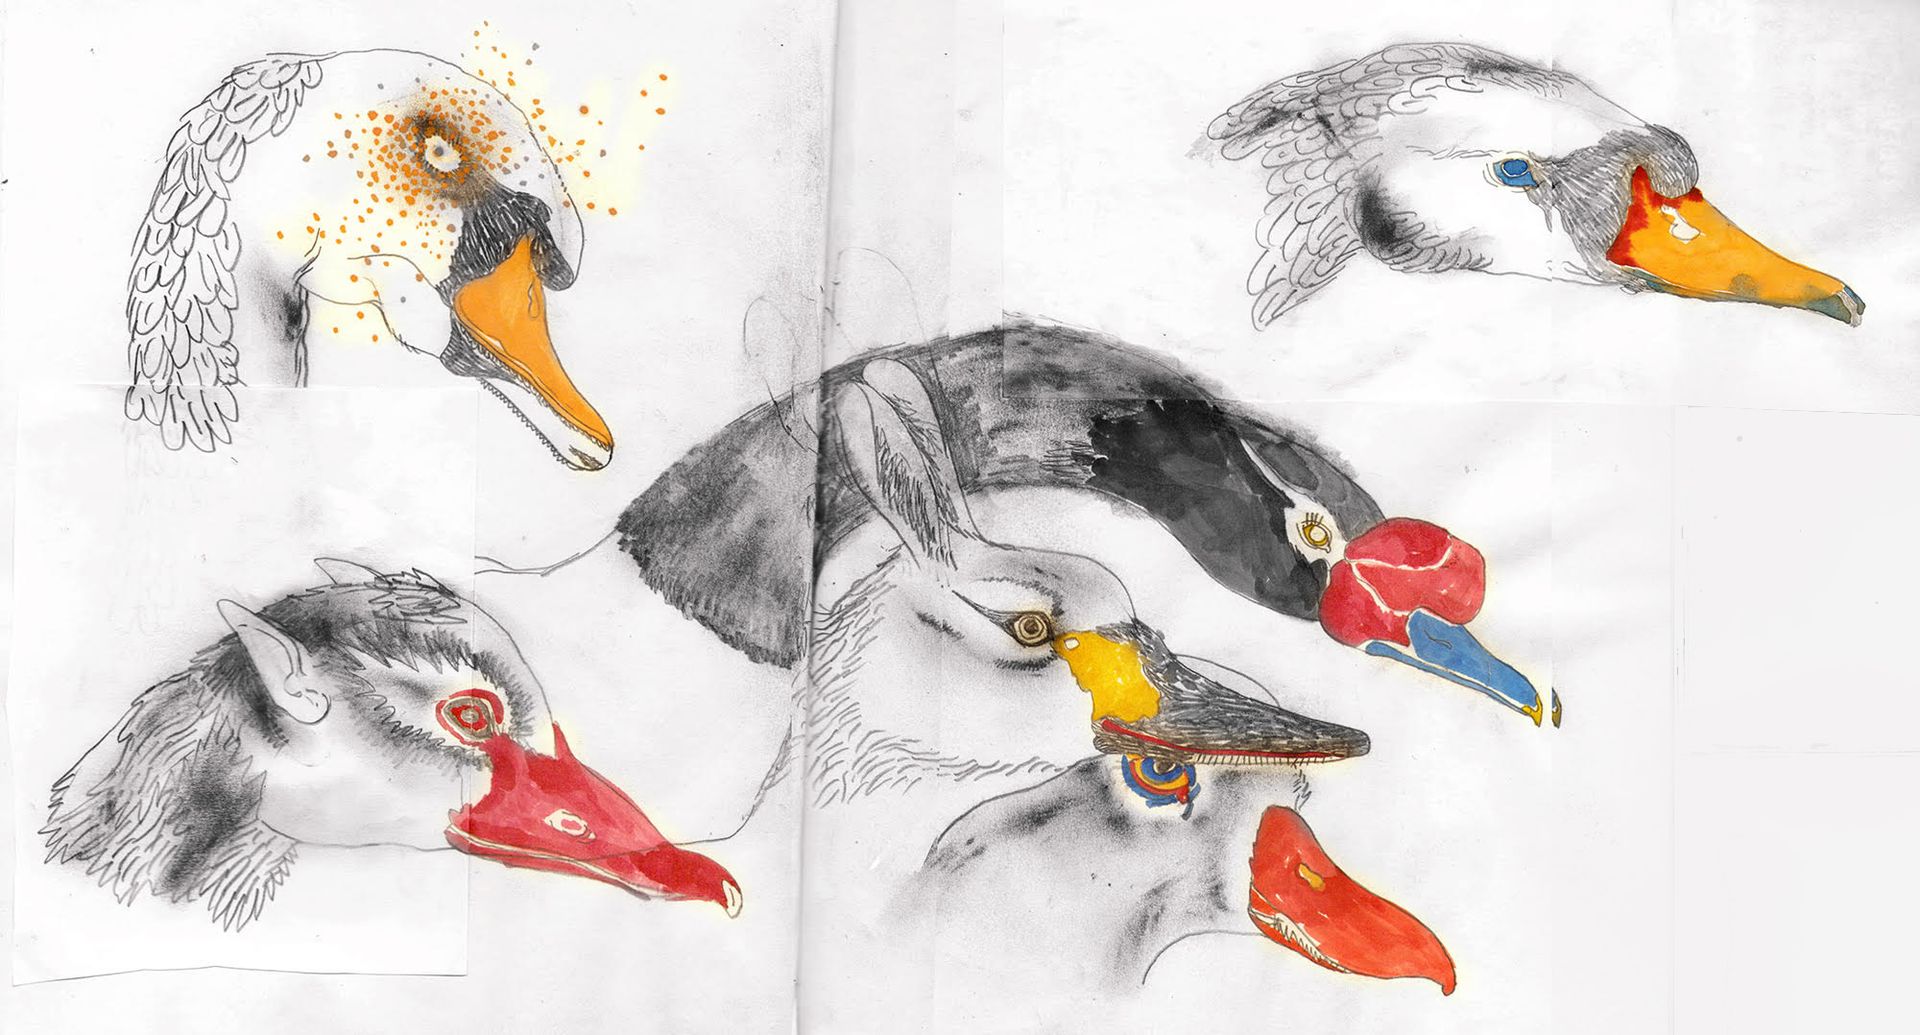 Василиса Палянина (Авторская графика - 
                  55 x 38 см) Birds of a feather flock together